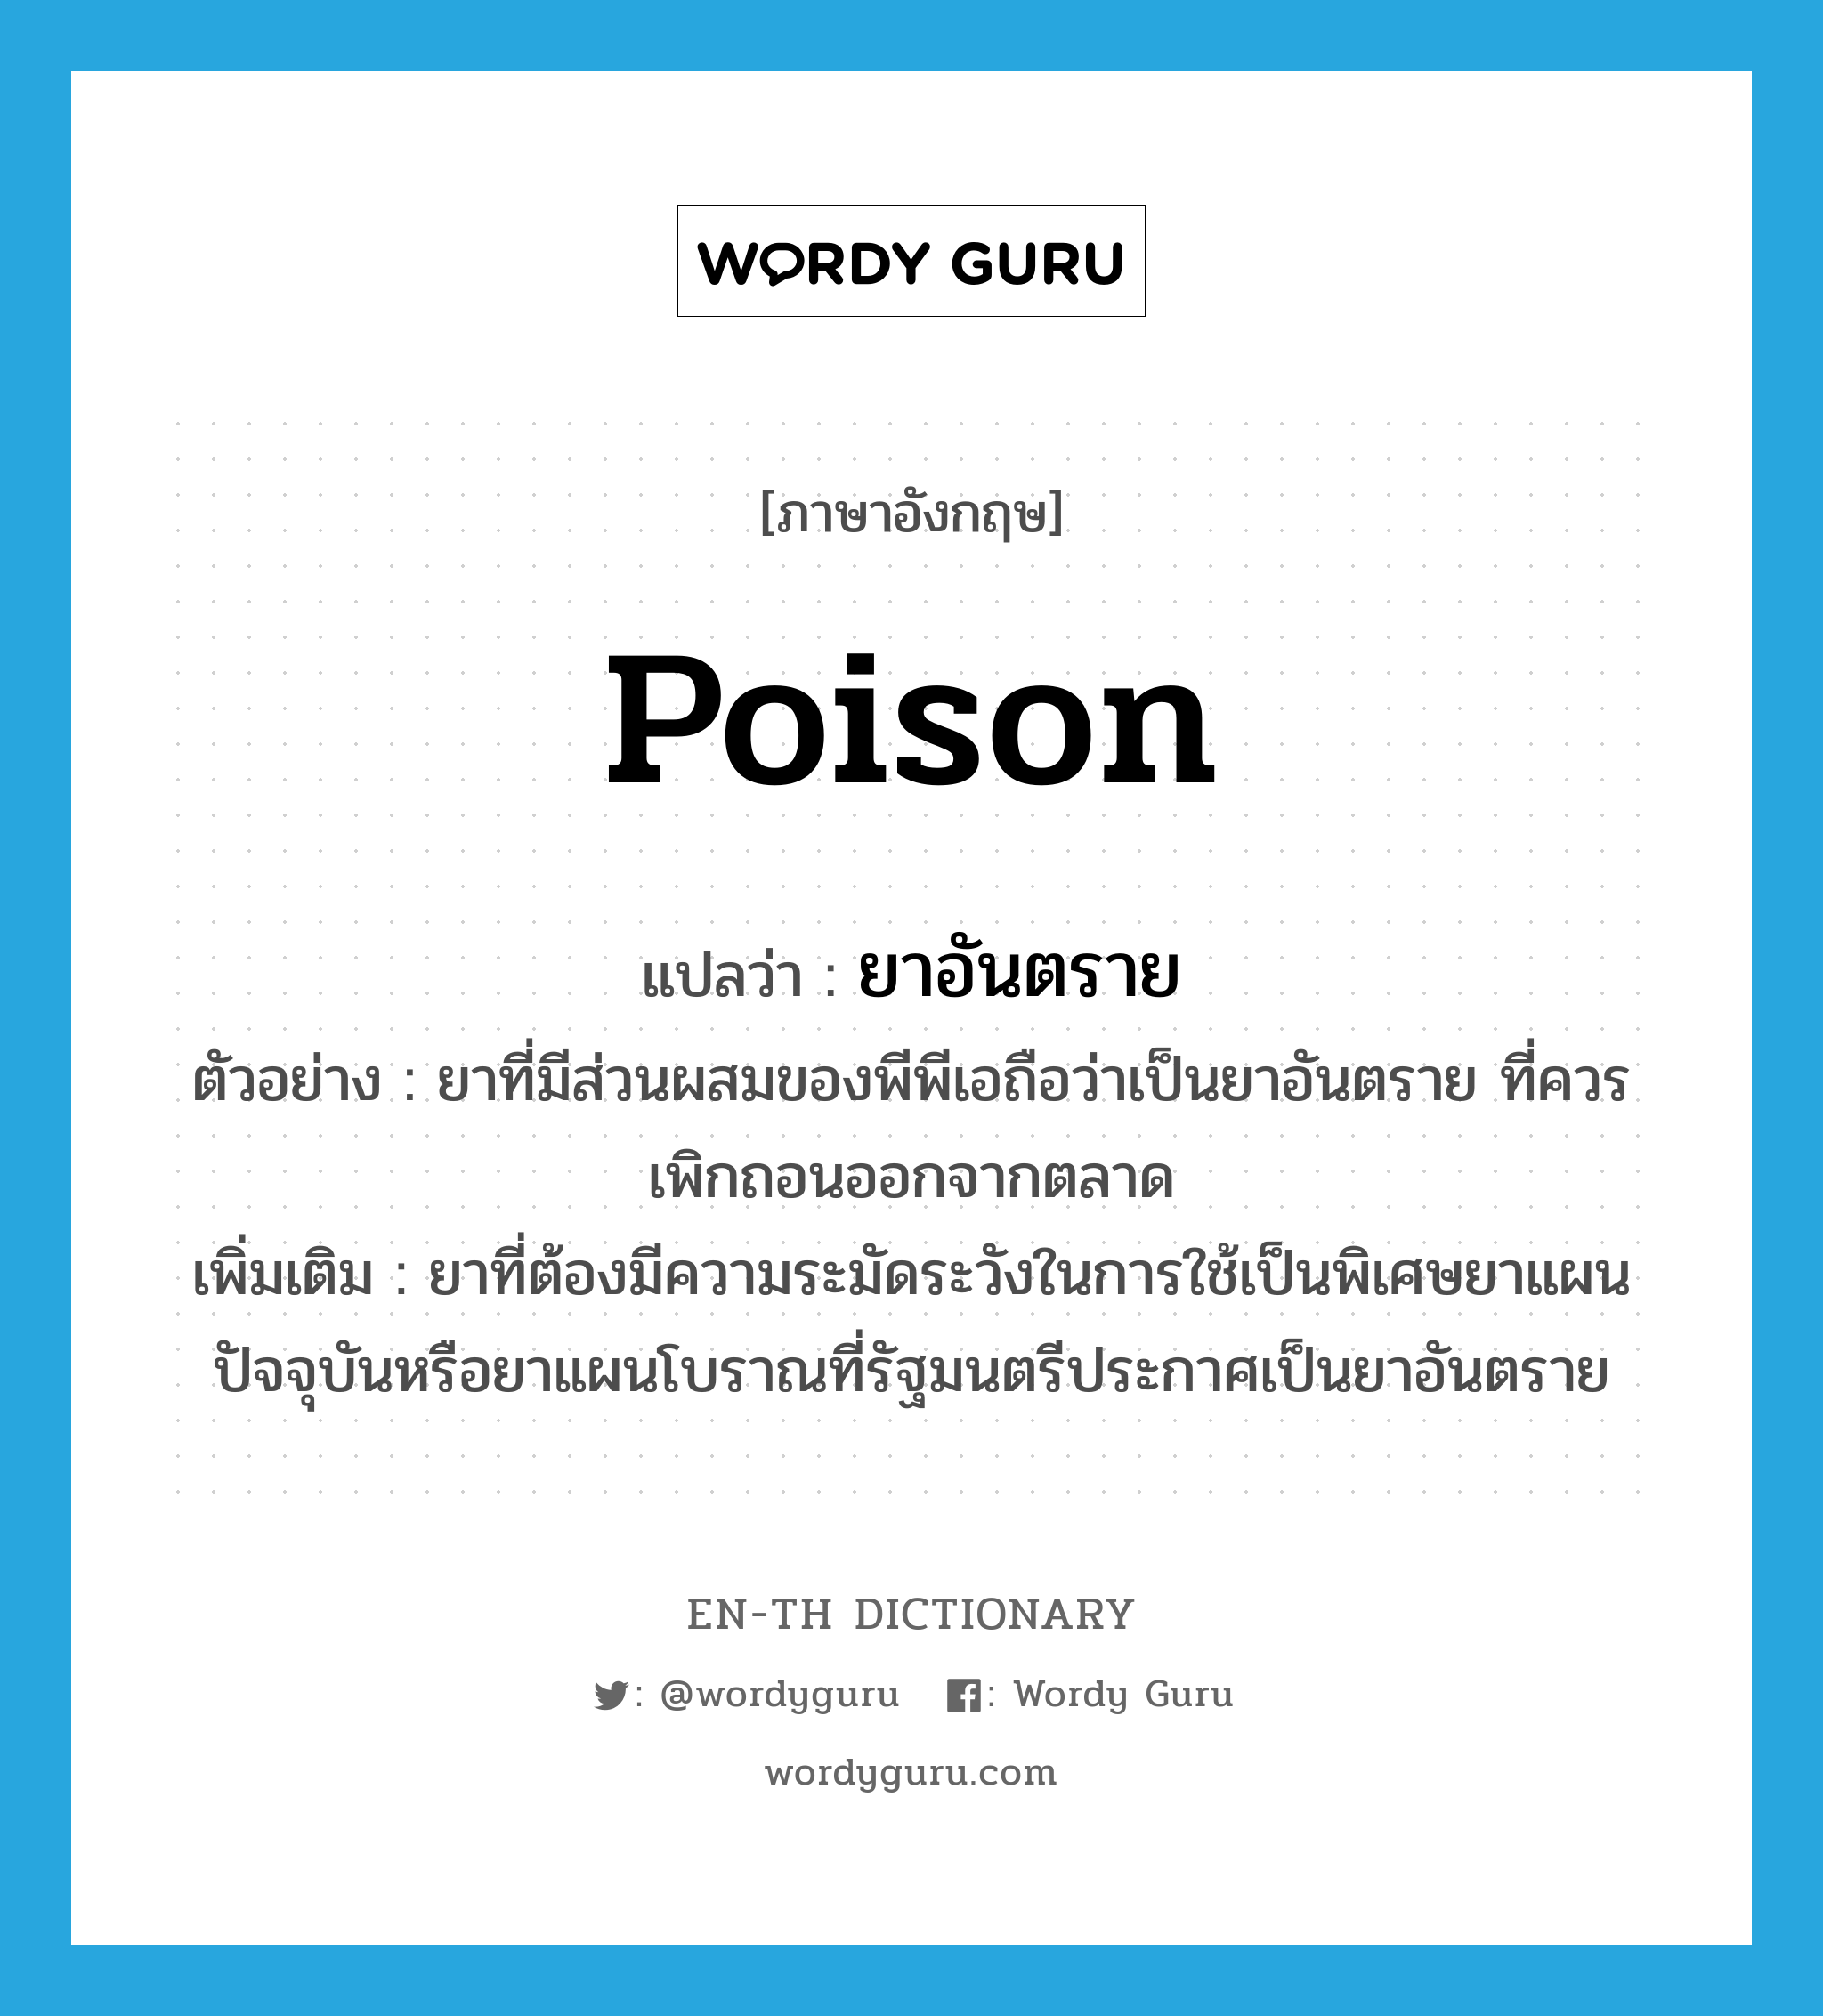 poison แปลว่า?, คำศัพท์ภาษาอังกฤษ poison แปลว่า ยาอันตราย ประเภท N ตัวอย่าง ยาที่มีส่วนผสมของพีพีเอถือว่าเป็นยาอันตราย ที่ควรเพิกถอนออกจากตลาด เพิ่มเติม ยาที่ต้องมีความระมัดระวังในการใช้เป็นพิเศษยาแผนปัจจุบันหรือยาแผนโบราณที่รัฐมนตรีประกาศเป็นยาอันตราย หมวด N